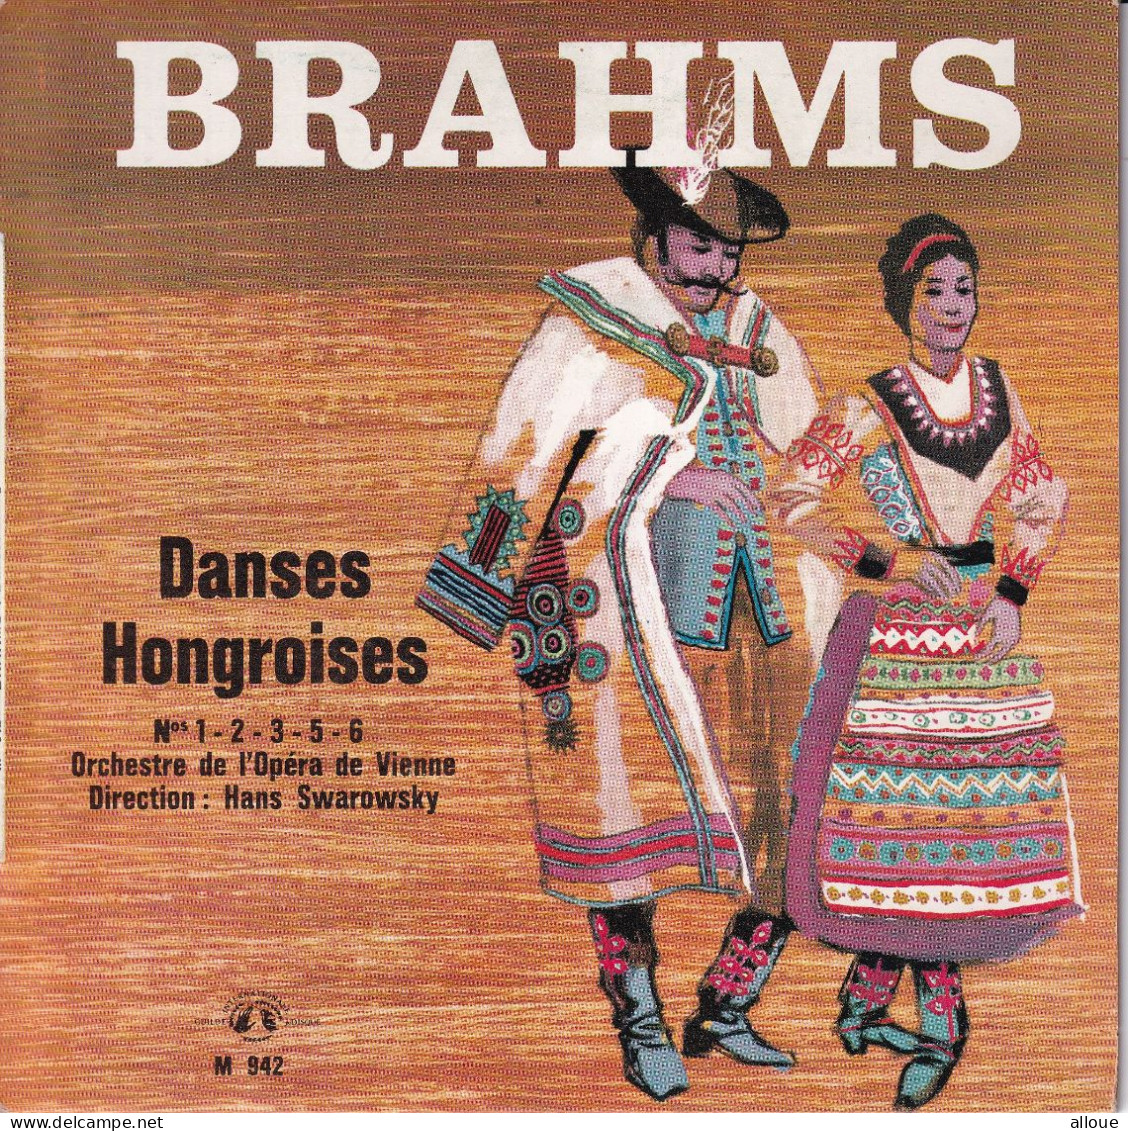 ORCHESTRE DE L'OPERA DE VIENNE - DIRECTION HANS SWAROWSKY - FR EP - BRAHMS - DANCES HONGROISES - Clásica